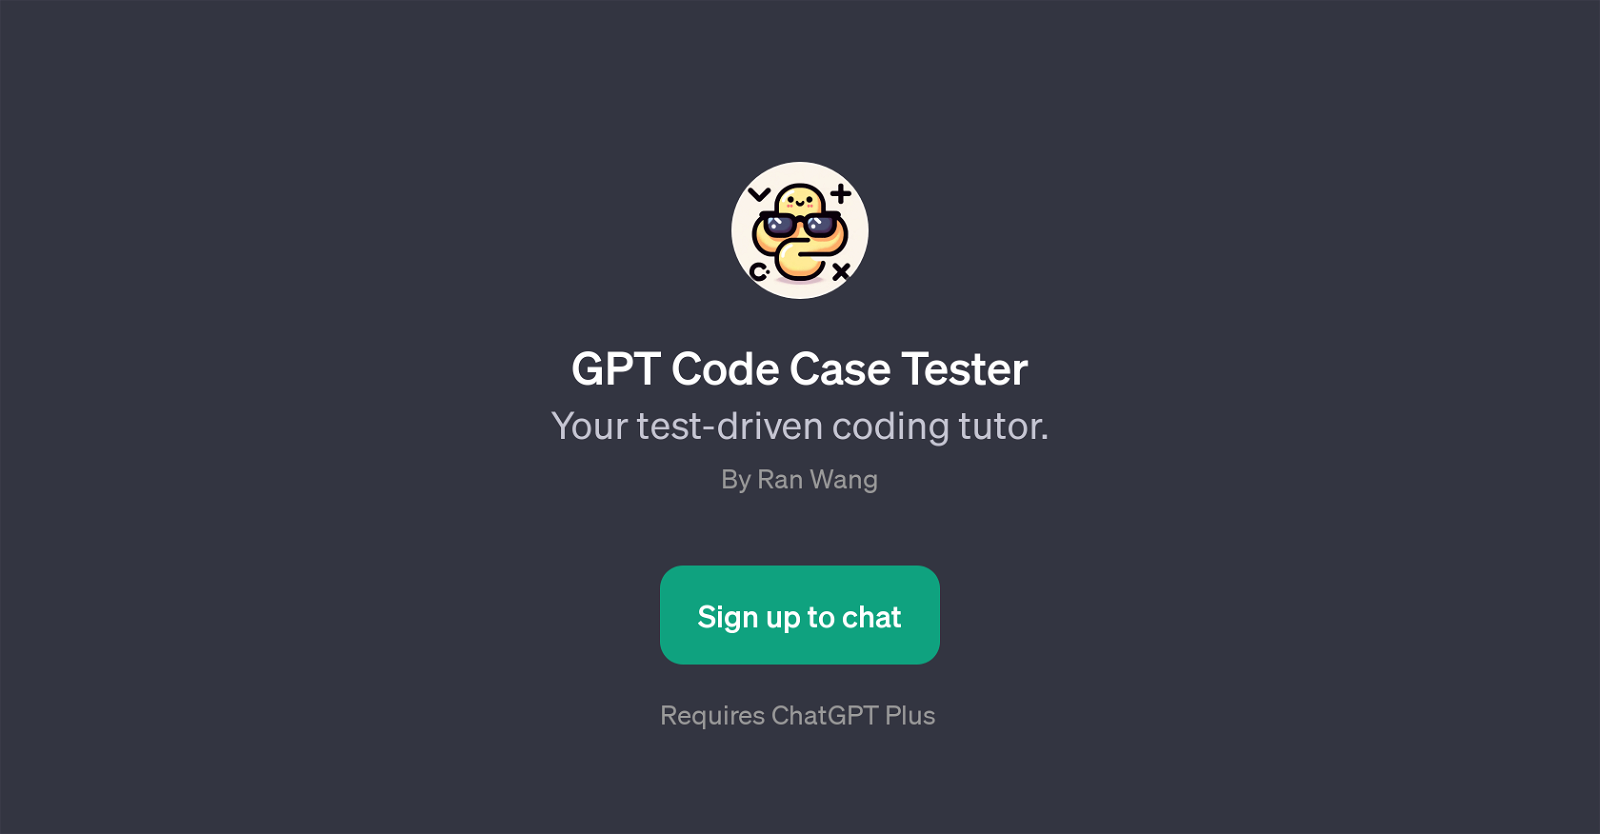 GPT Code Case Tester website